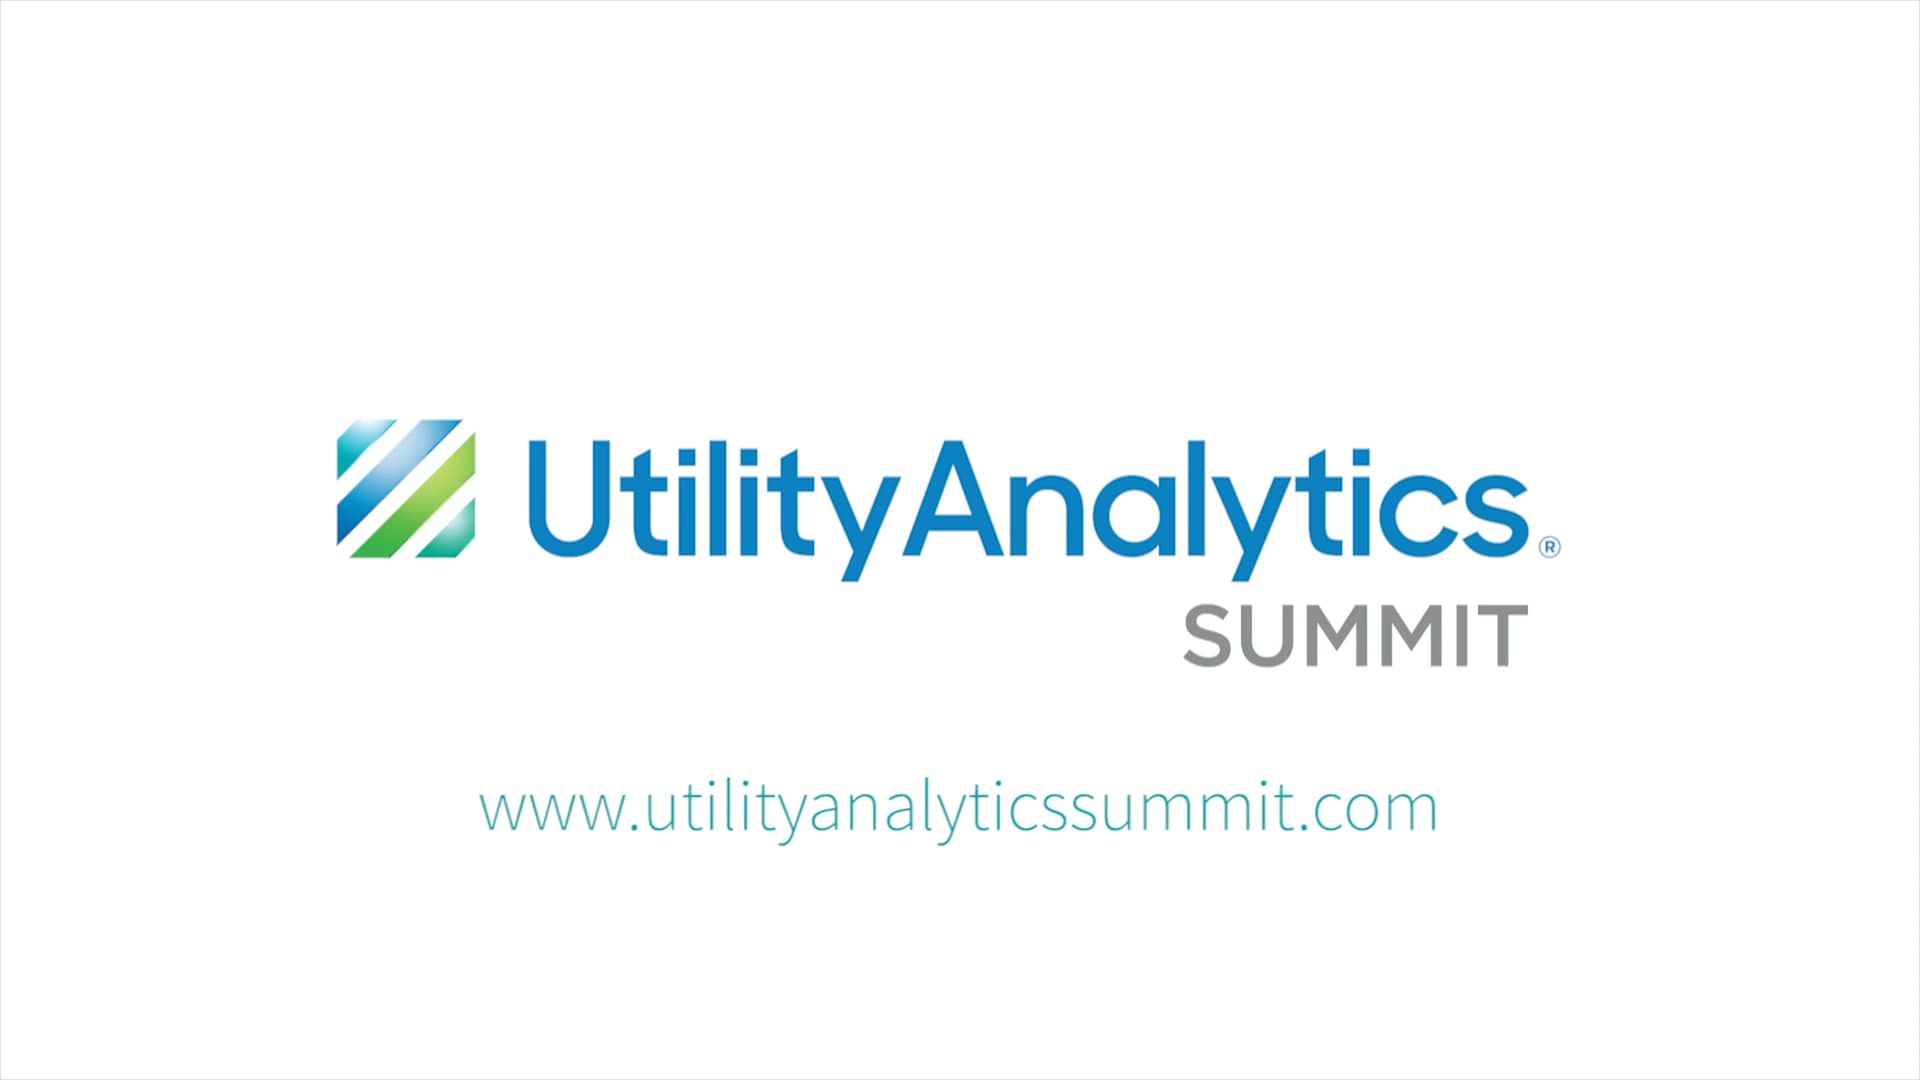 Utility Analytics Summit 2018 Highlight Video on Vimeo